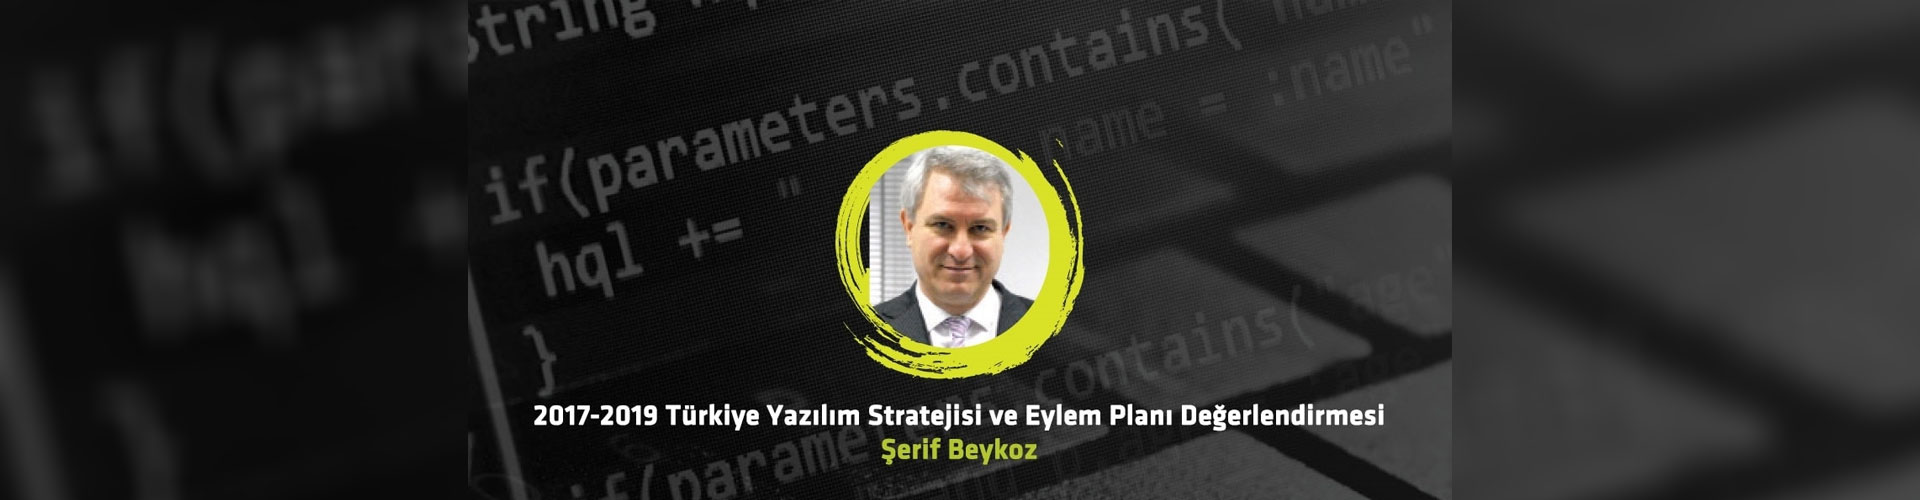 2017-2019 Türkiye Yazılım Stratejisi ve Eylem Planı Değerlendirmesi